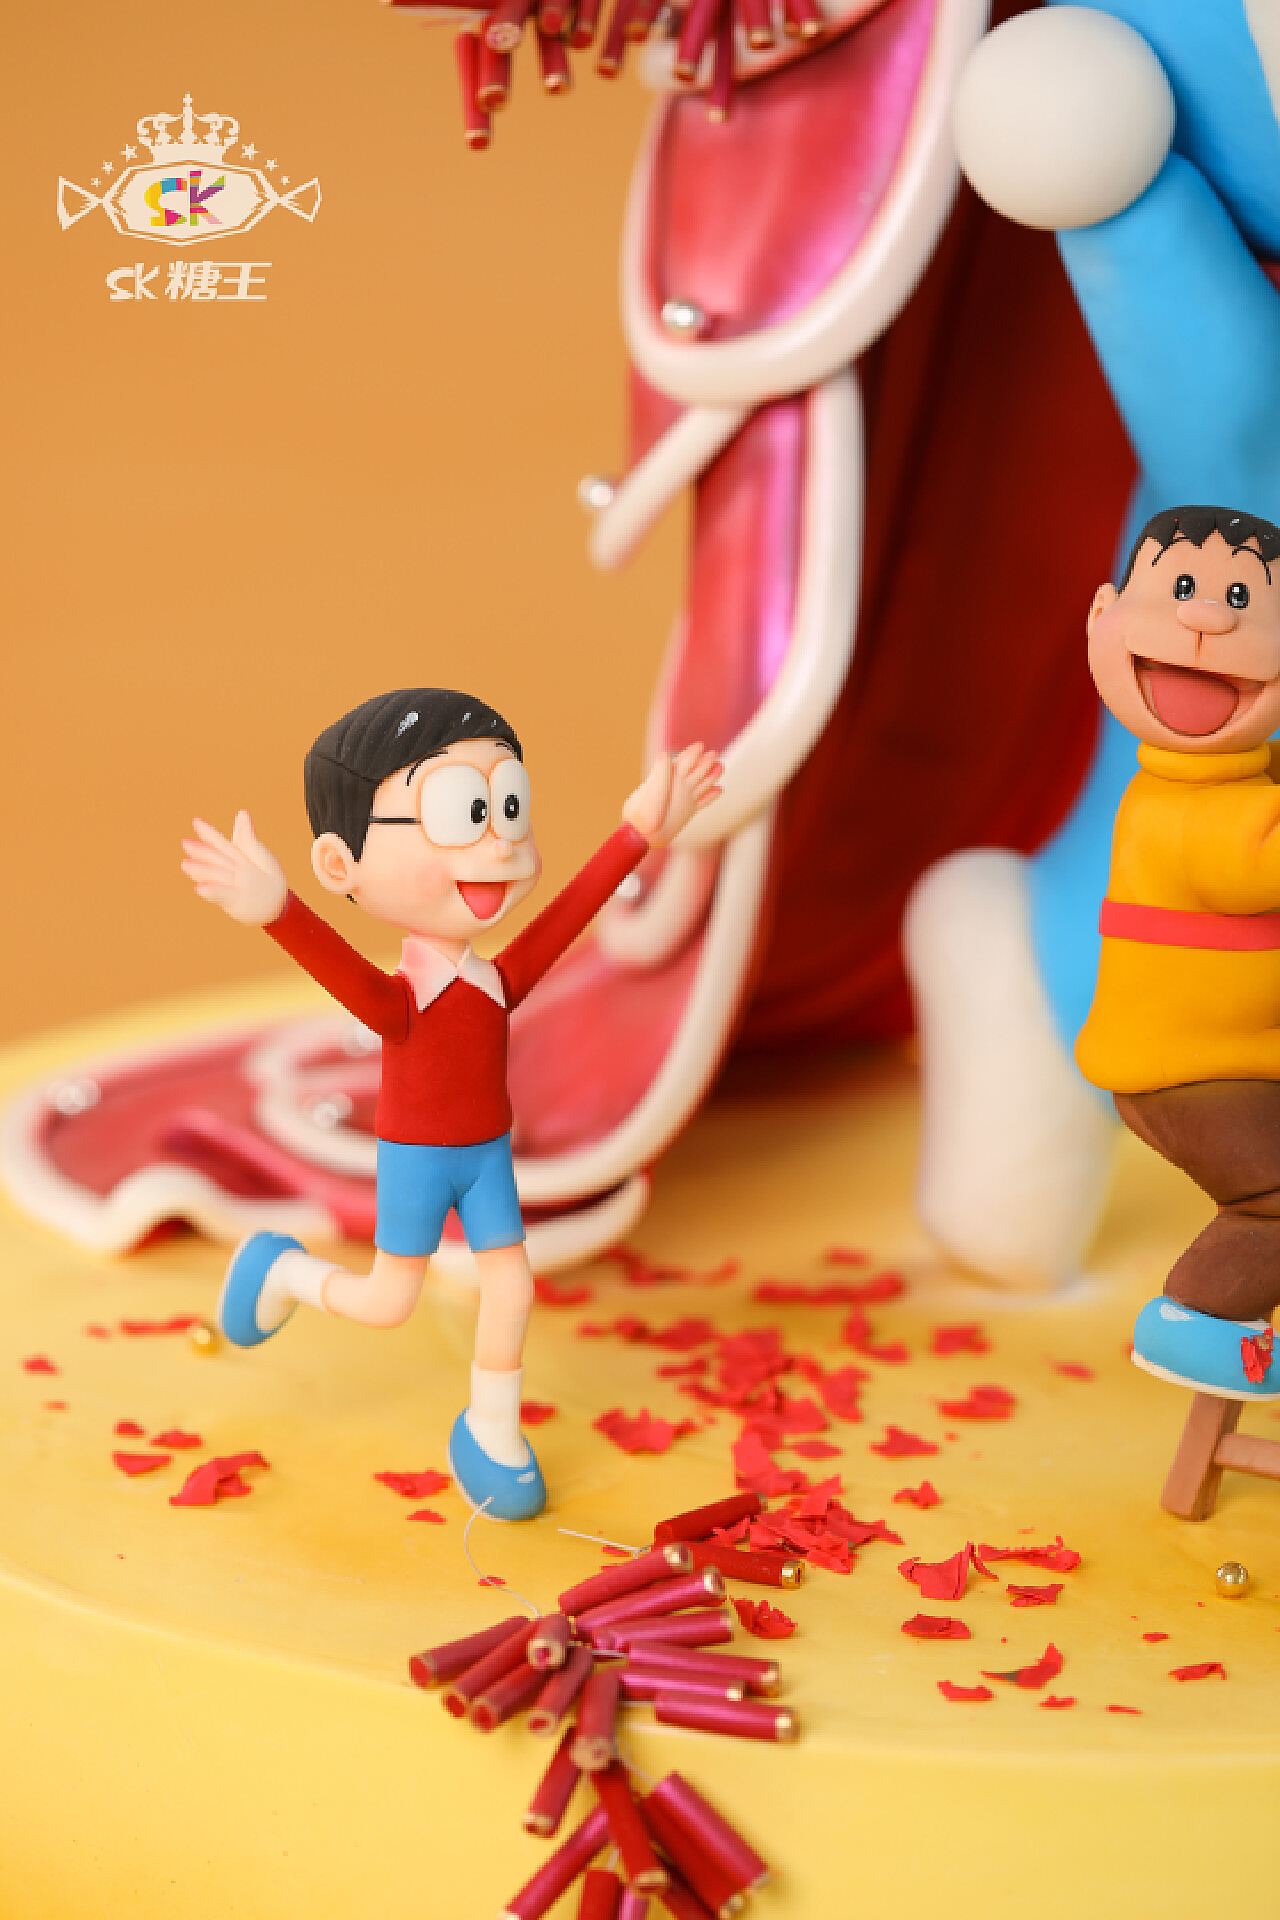 哆啦A梦 生日快乐 - 堆糖，美图壁纸兴趣社区